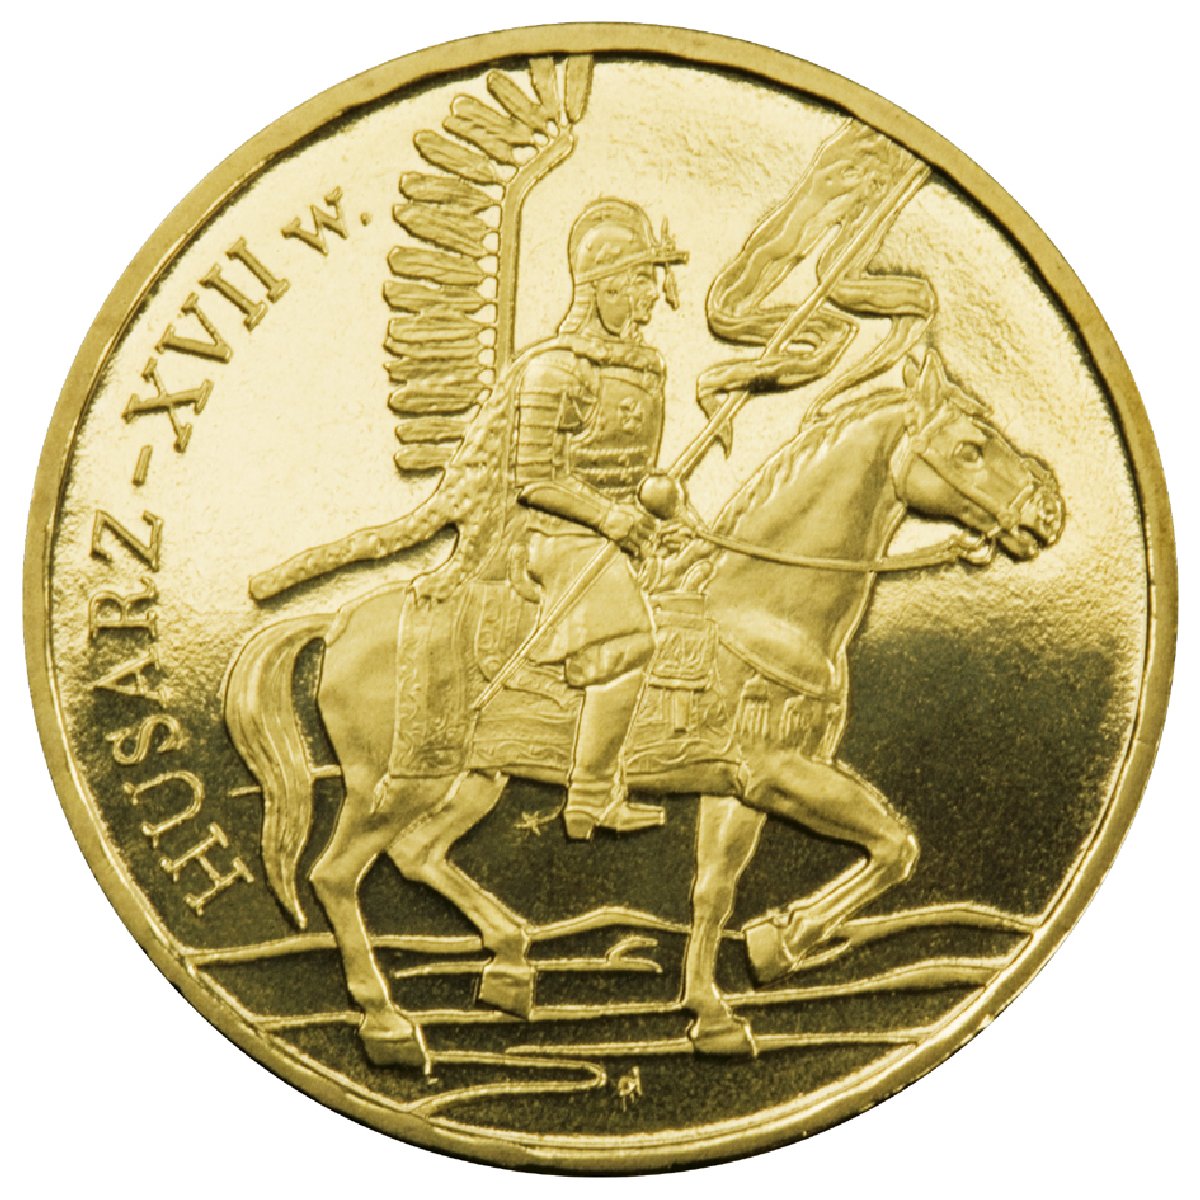 2zł-husarz-xvii-wiek-rewers-monety